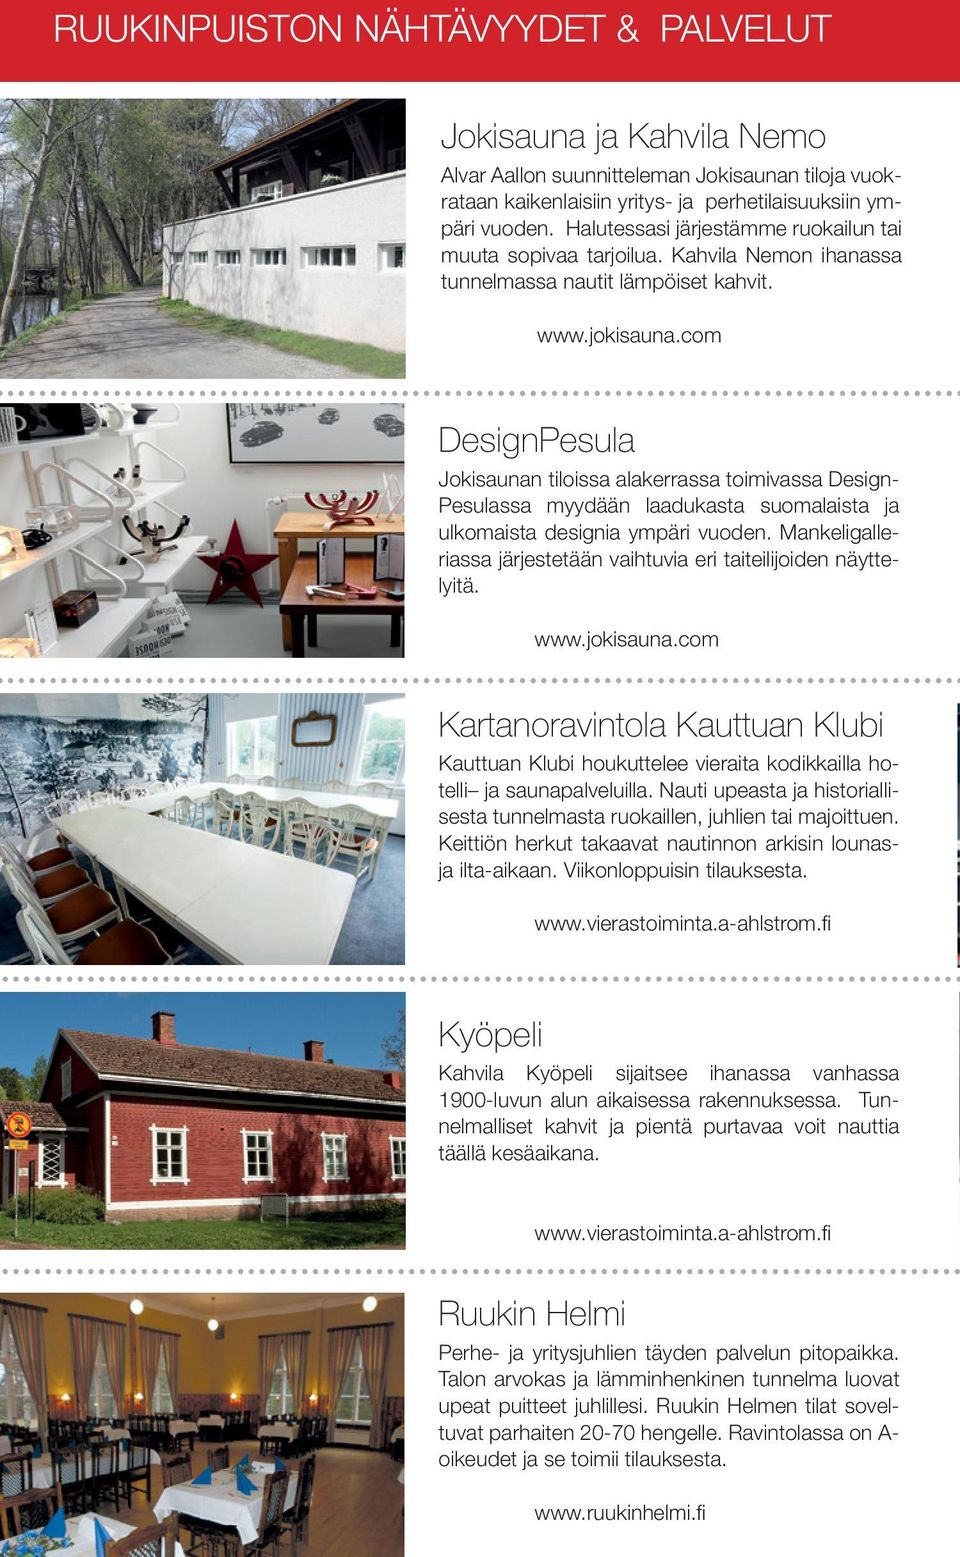 com DesignPesula Jokisaunan tiloissa alakerrassa toimivassa Design- Pesulassa myydään laadukasta suomalaista ja ulkomaista designia ympäri vuoden.